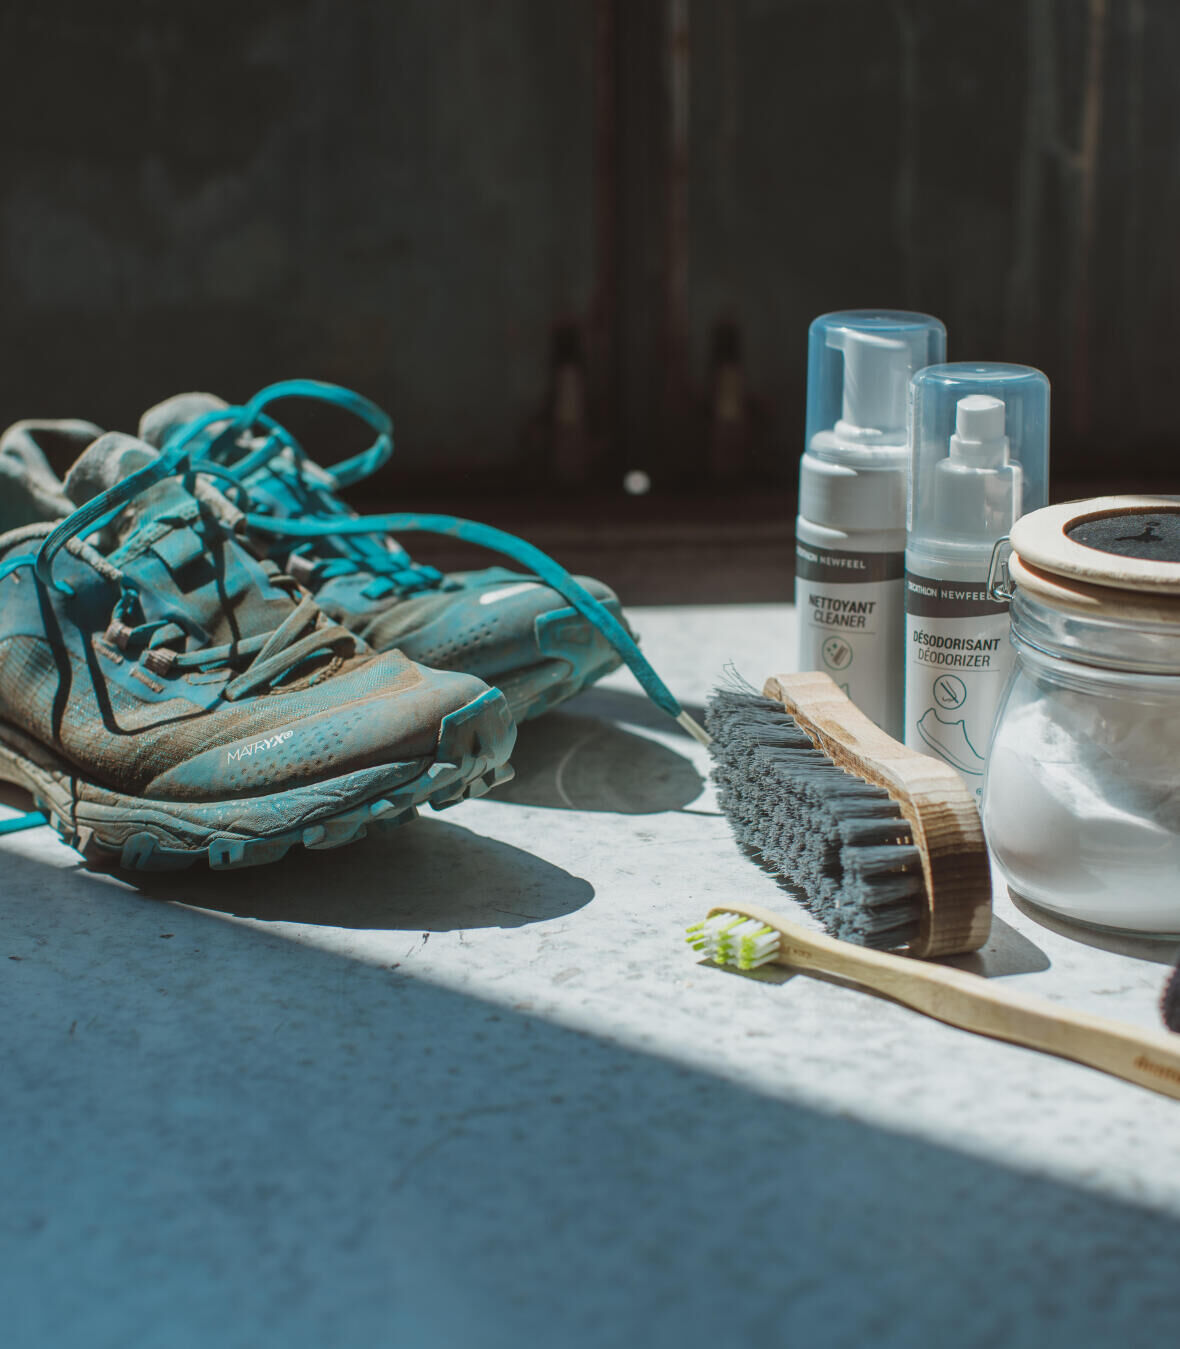 Come riparare le scarpe per lo sport?